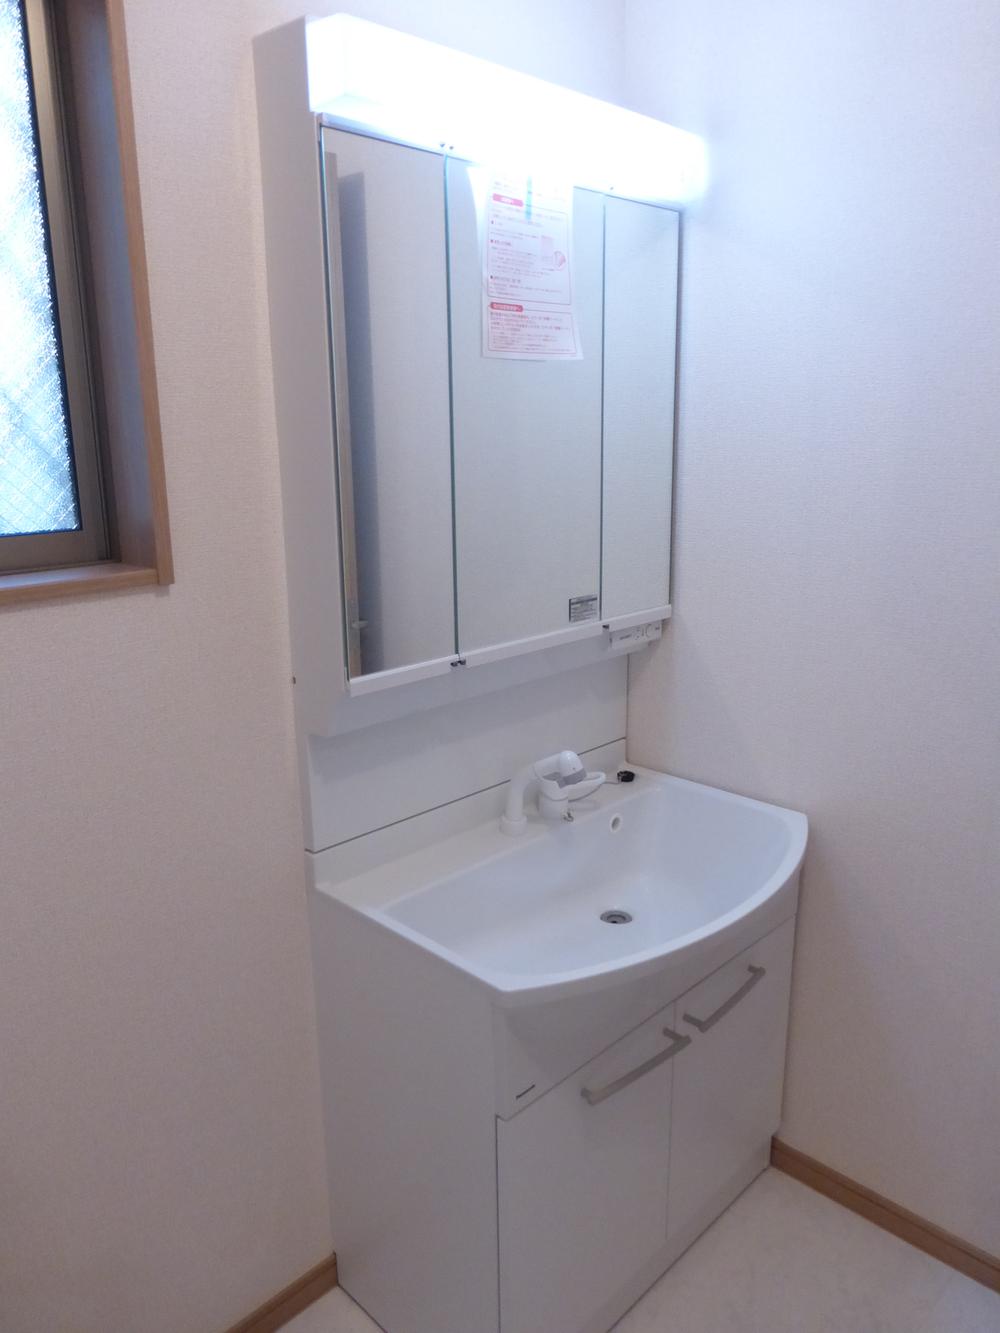 Wash basin, toilet. Building 2 Indoor (December 5, 2013) Shooting